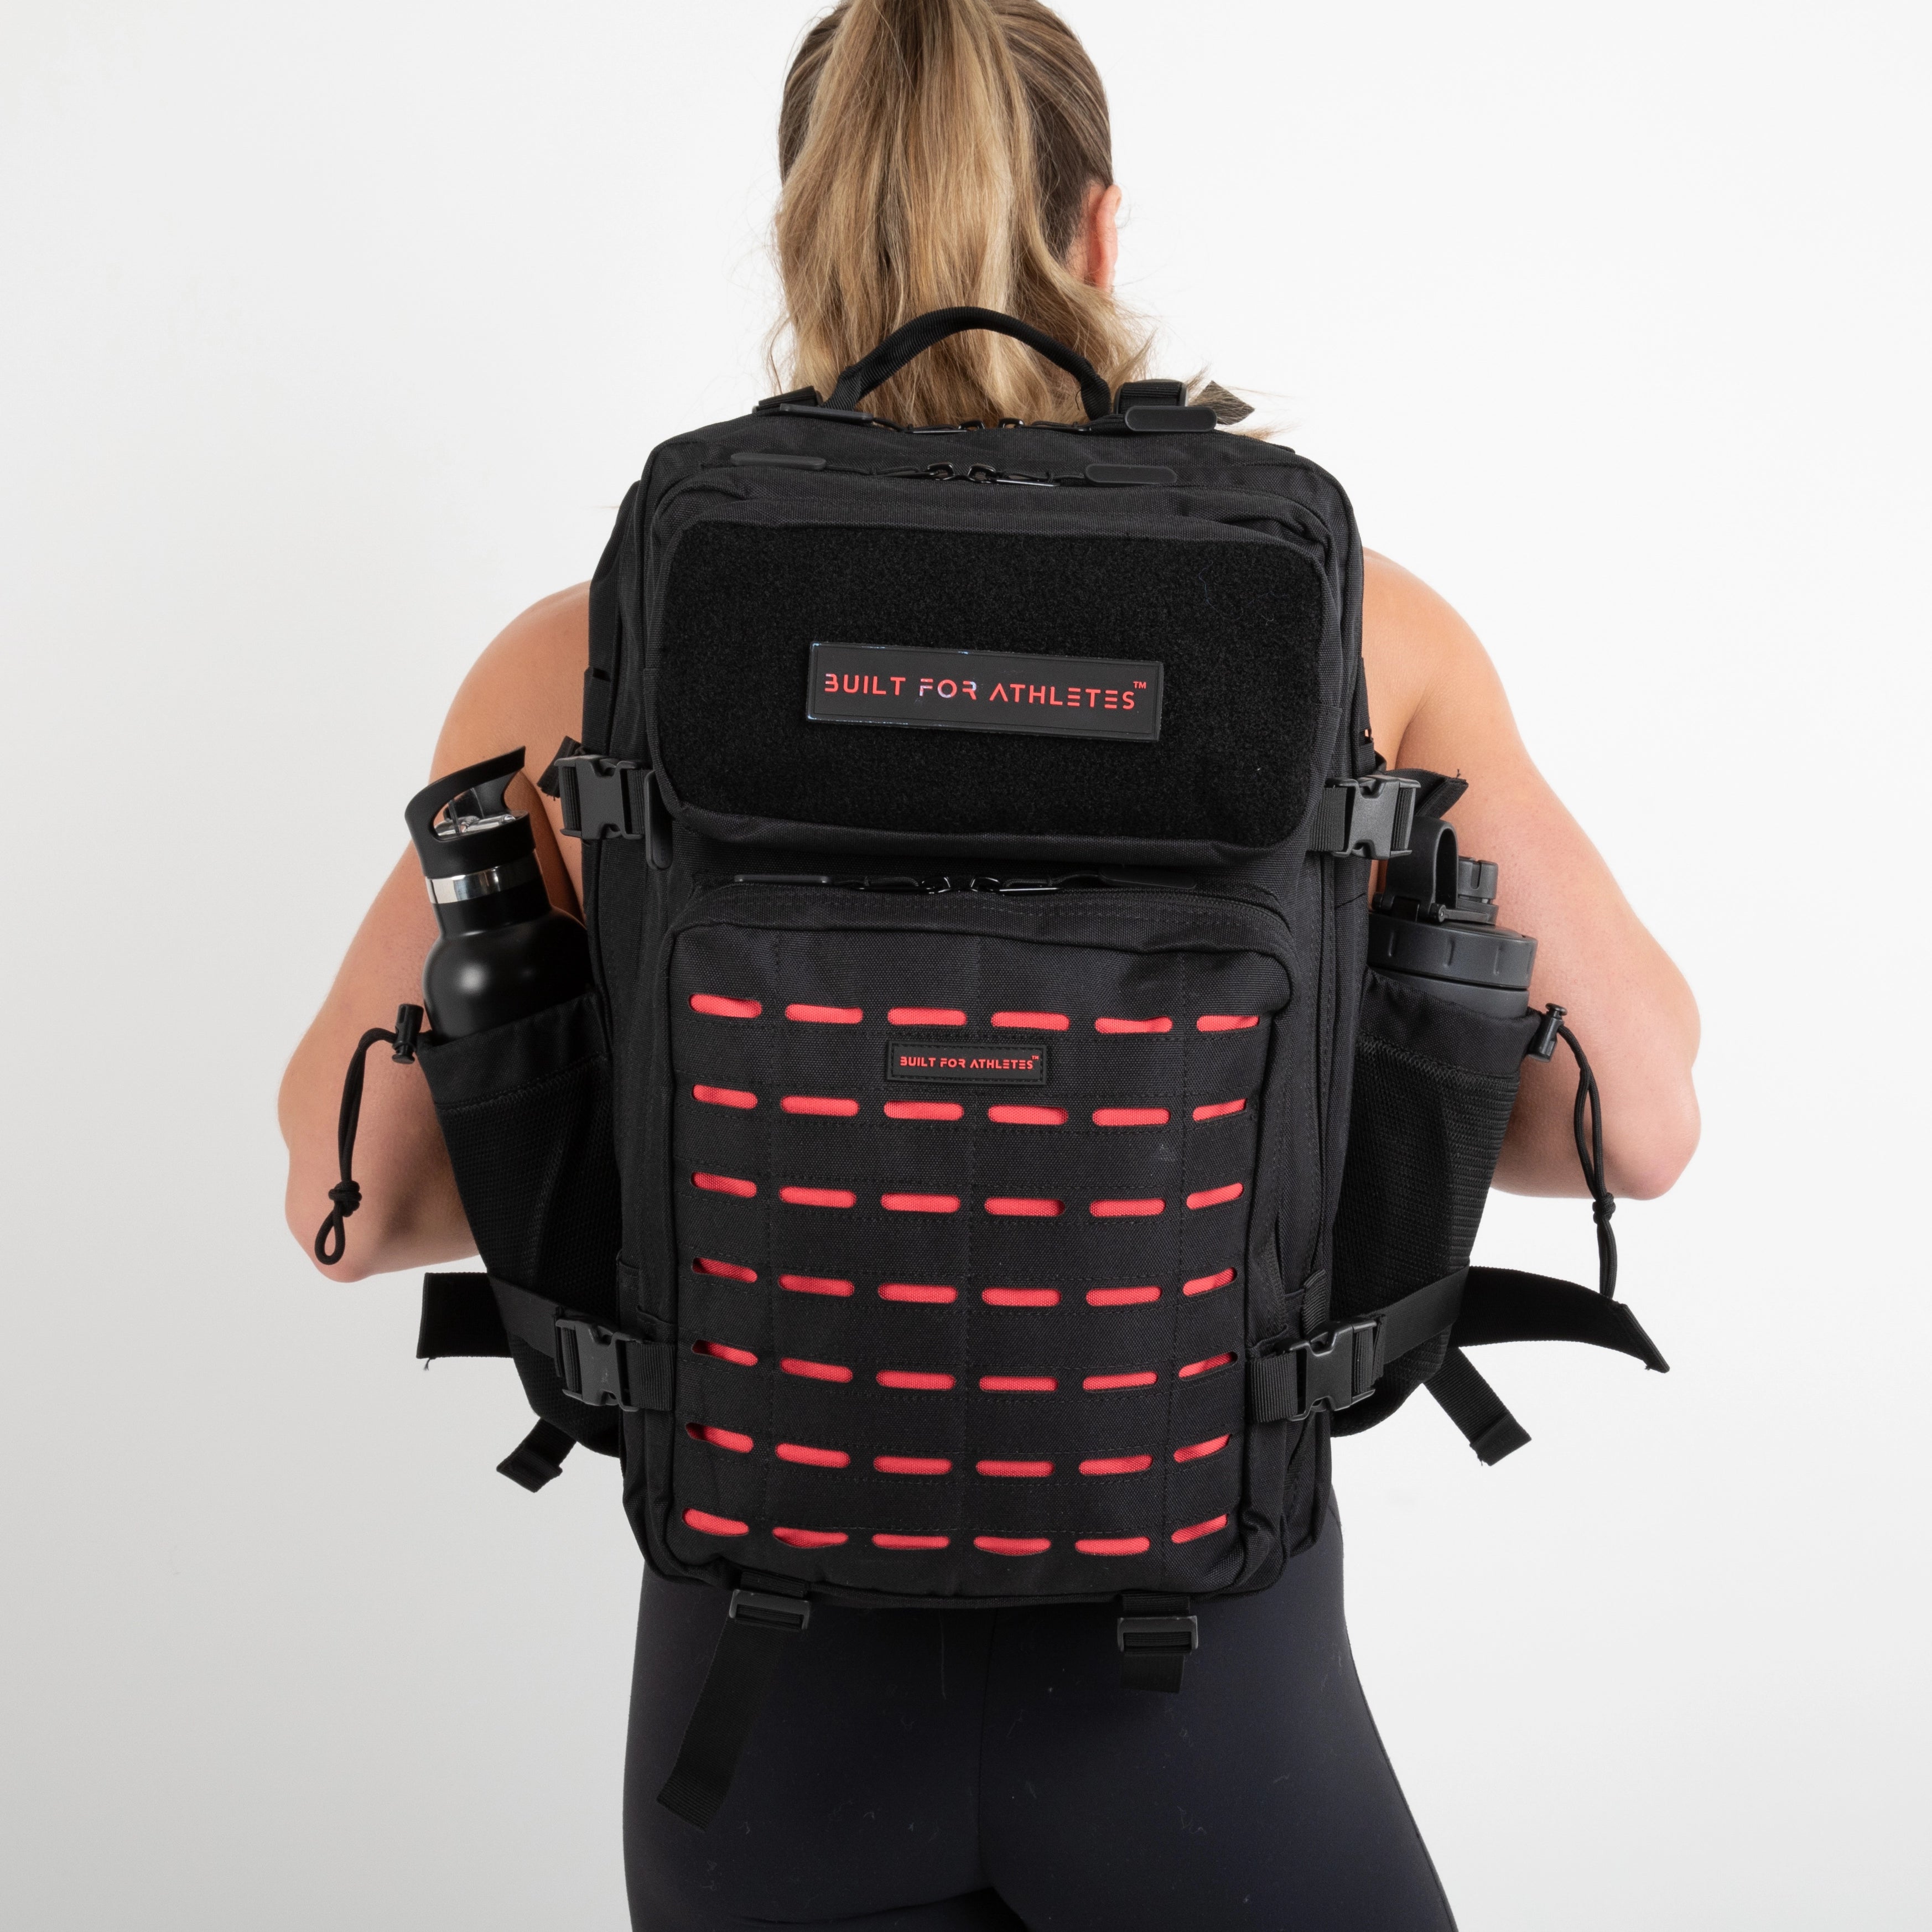 Built for Athletes Backpacks Large Black & Red Gym Backpack